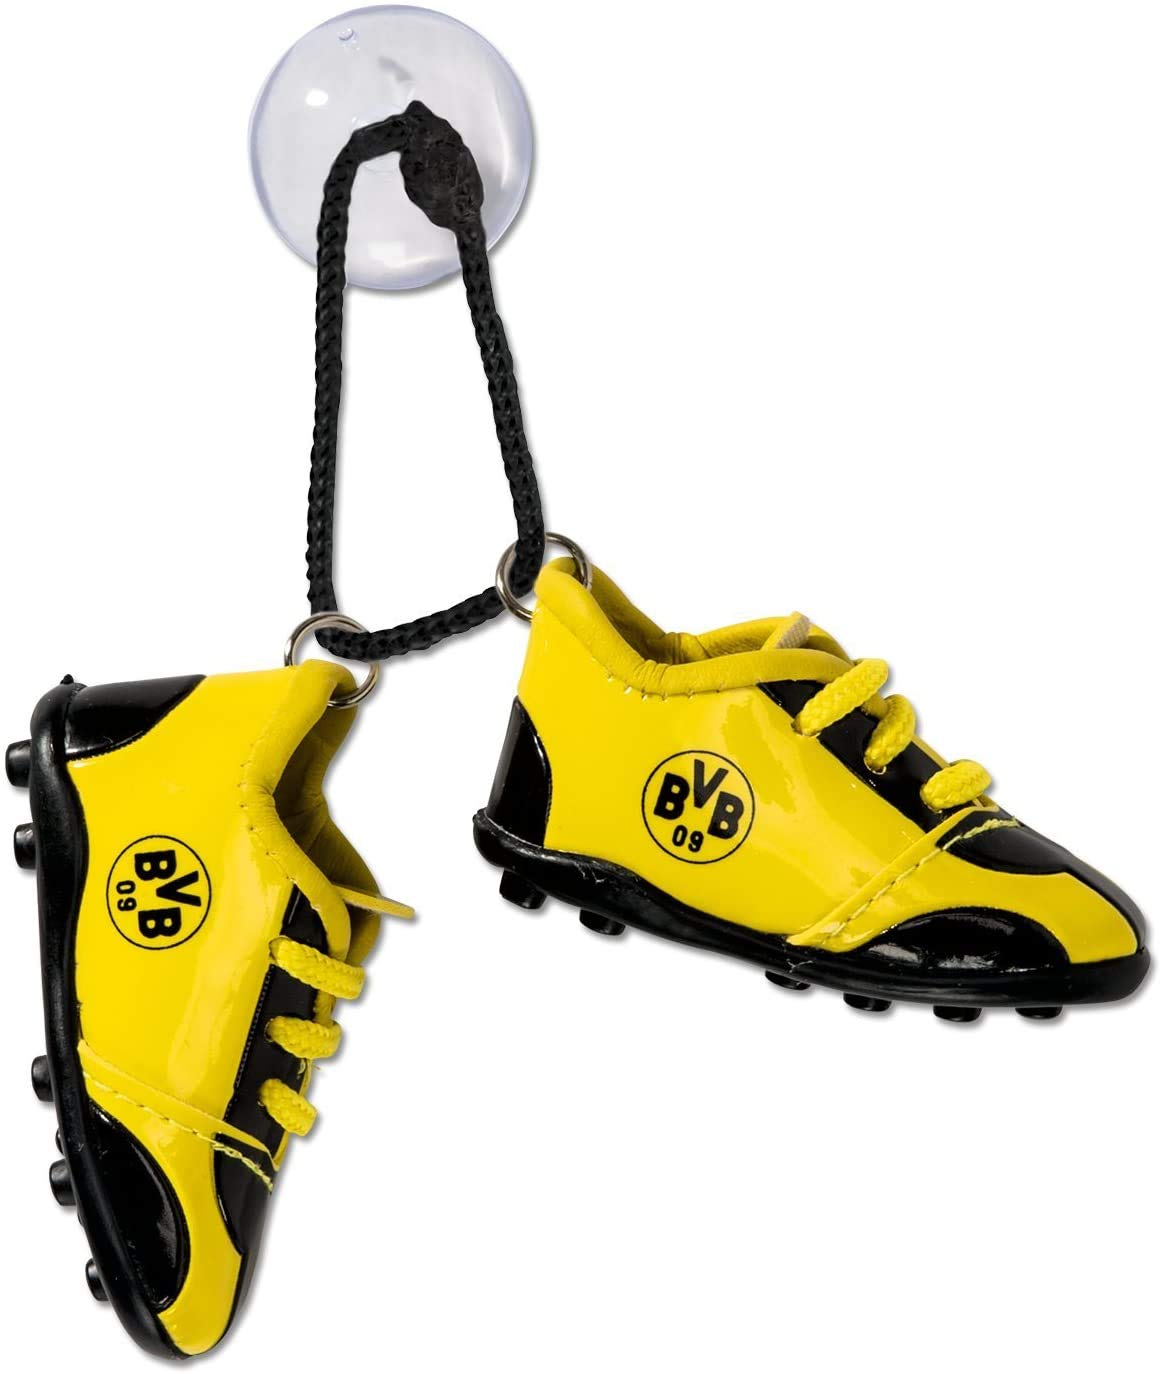 Borussia Dortmund Autoschuhe/Fussball Schuhe fürs Auto BVB 09 - plus gratis Aufkleber forever Dortmund von Borussia Dortmund